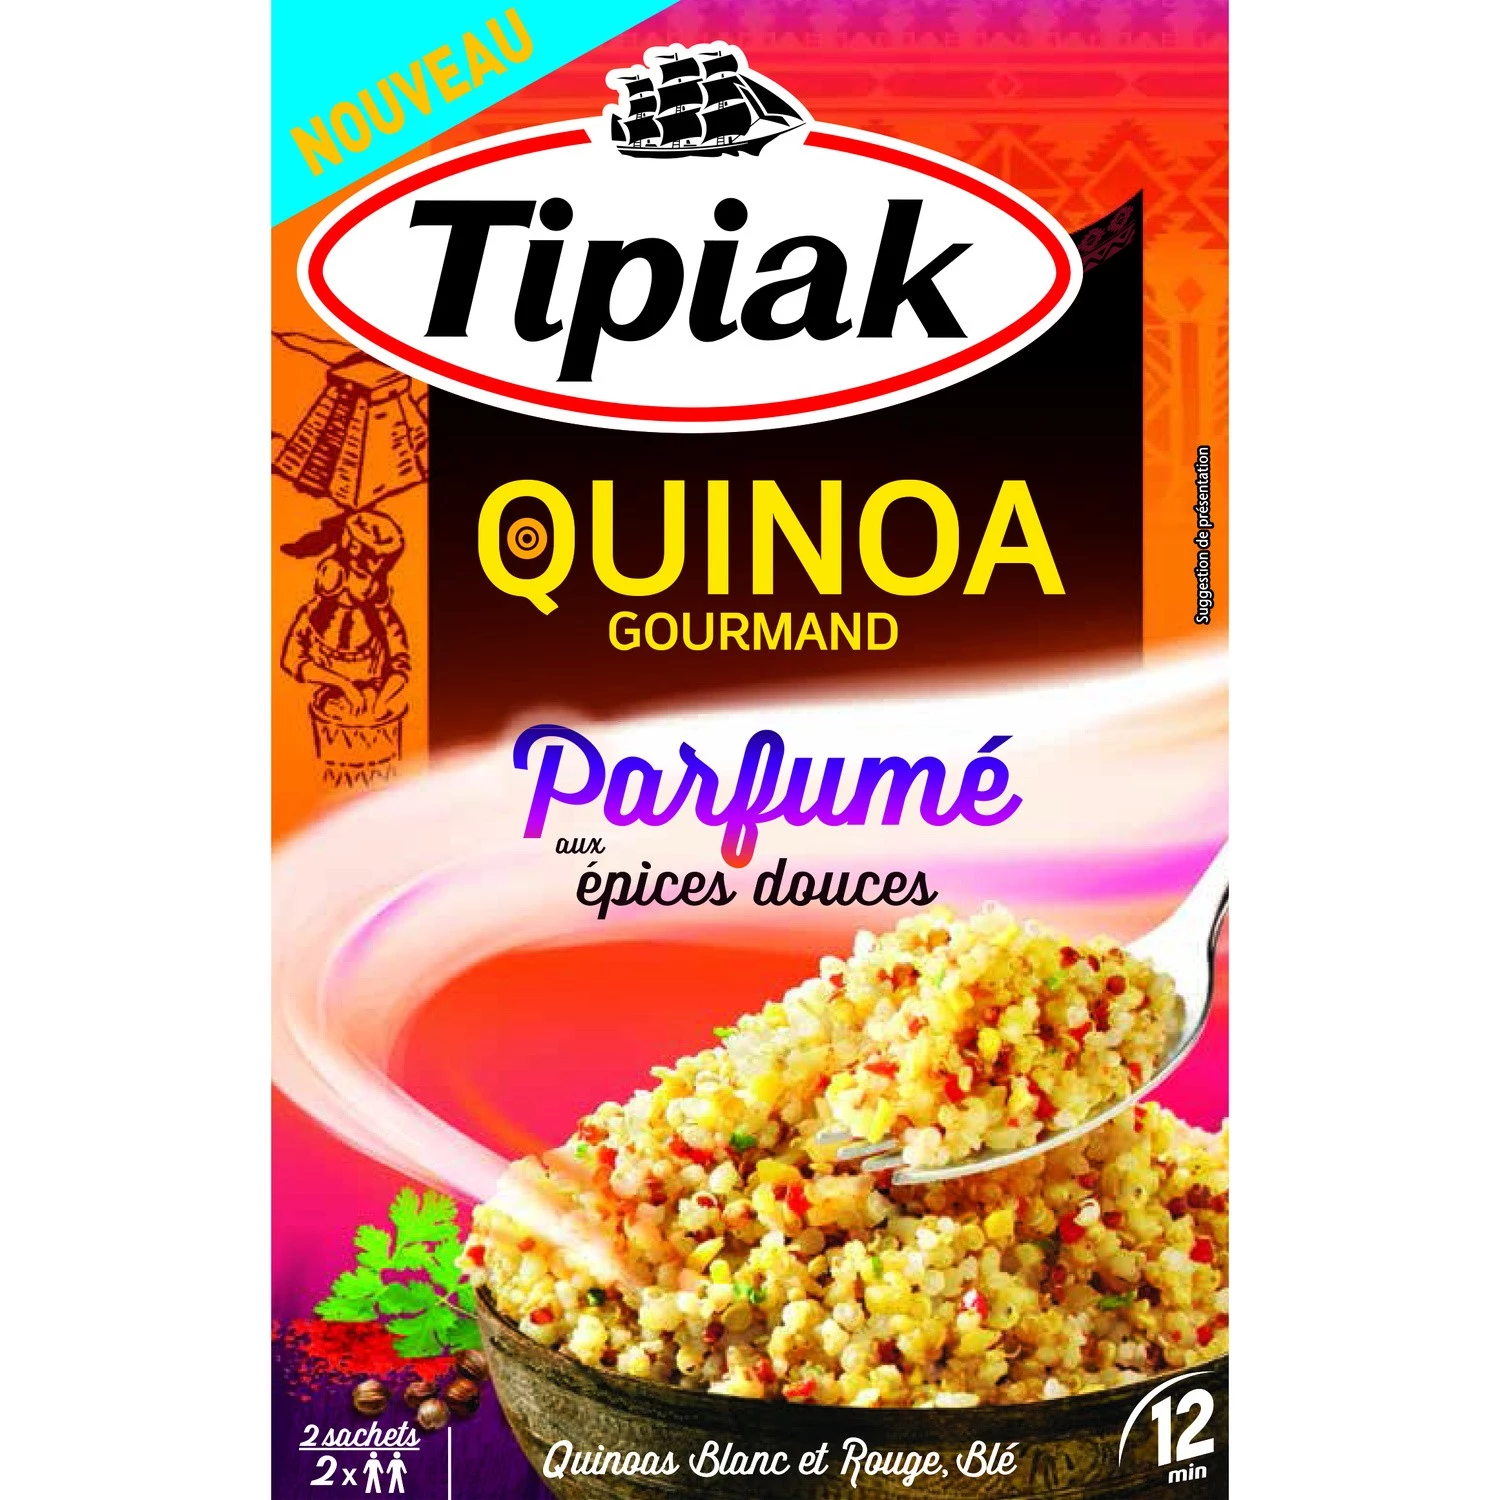 Quinoa dành cho người sành ăn có hương vị với gia vị ngọt, 2x120g - TIPIAK